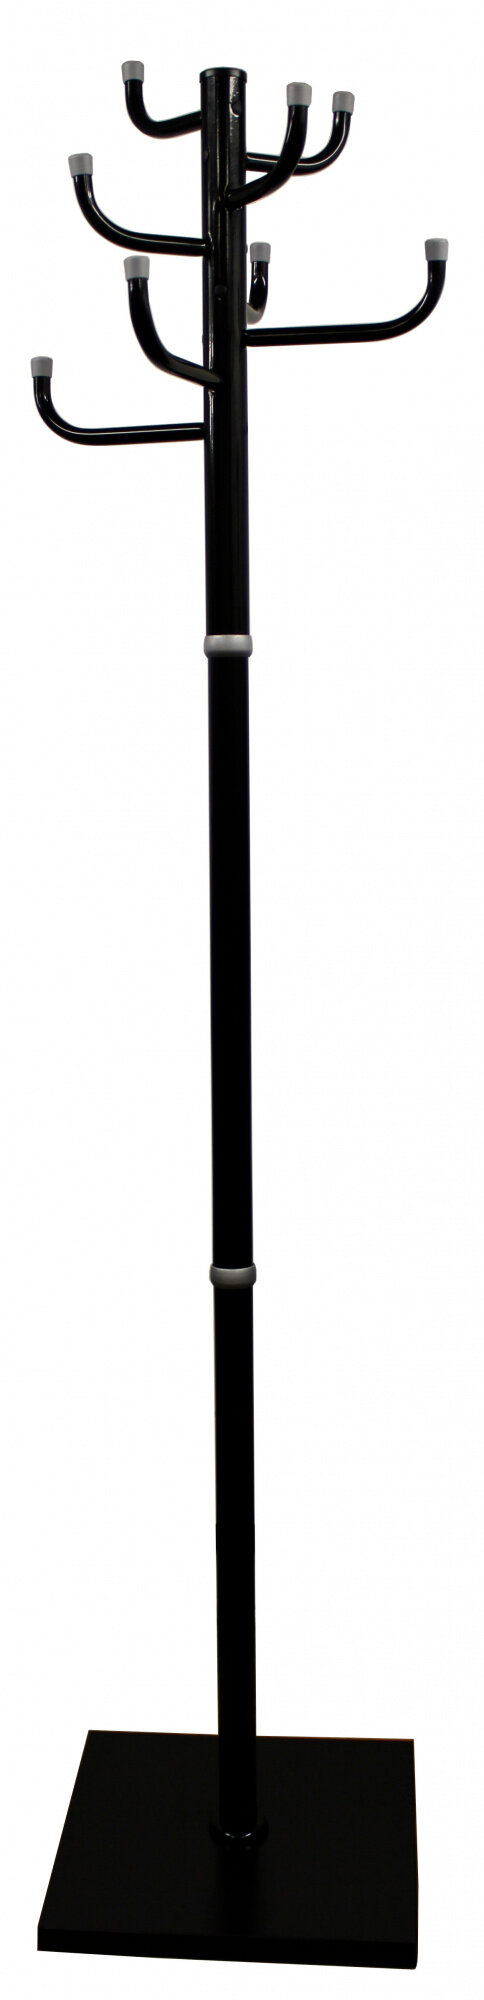 Вешалка напольная Бюрократ Мажор 2 мажор 2/BLACK черный основание квадрат наконечники серебристый для верхней одежд